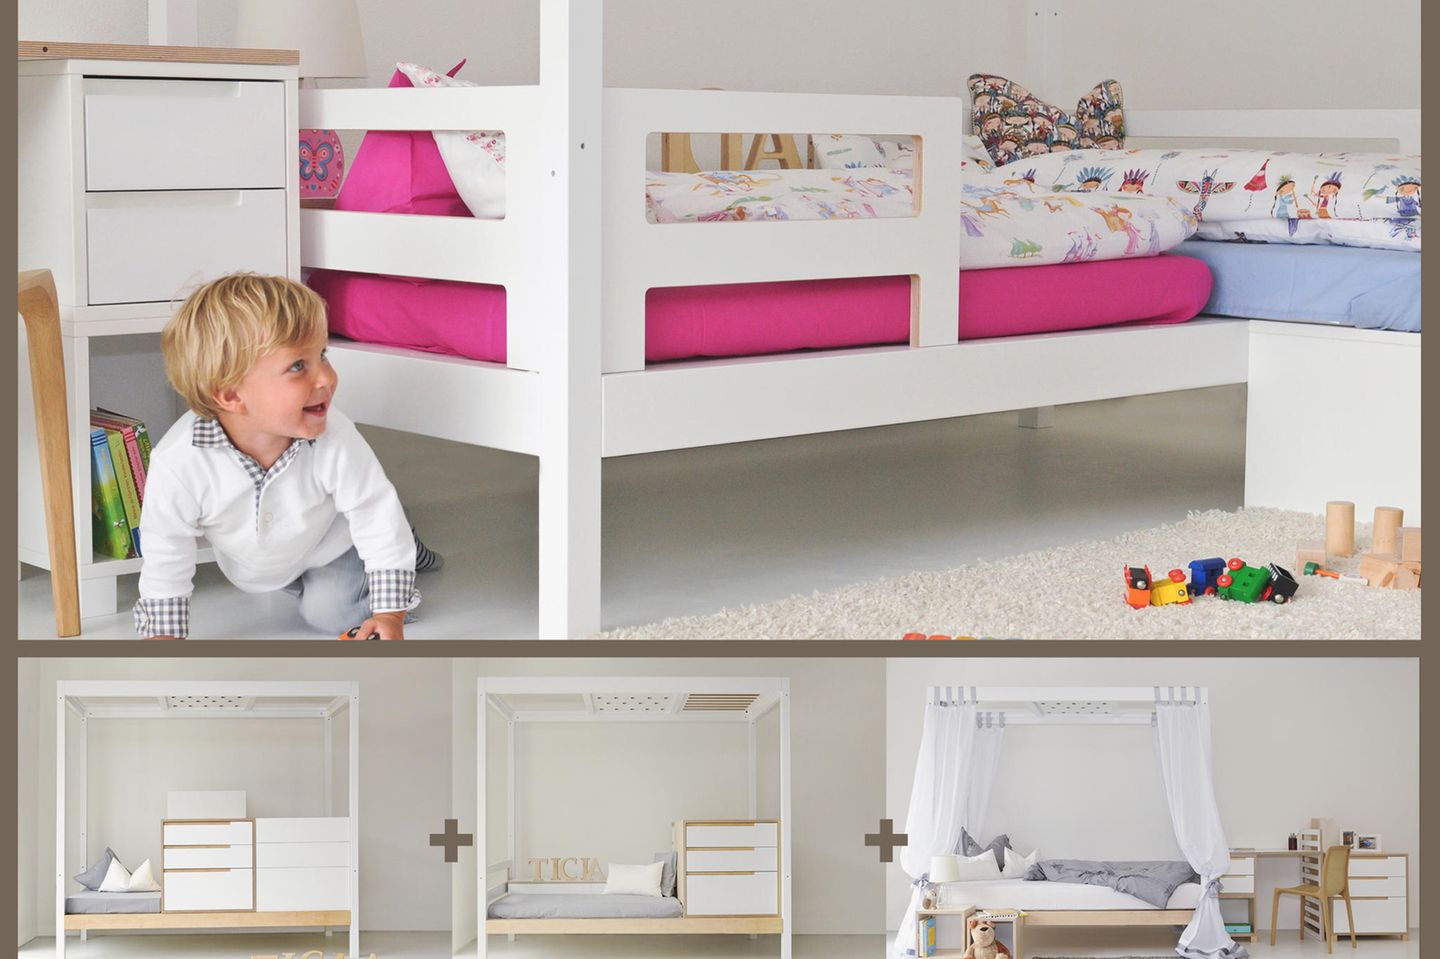 TICIA, das mitwachsendes Bett in italienischem Design, lässt sich von der Wiege bis hin zum Erwachsenenbett verwandeln, sowohl für ein Kind als auch für Geschwister / Zwillinge. Aus schadstofffreien Materialien. (Preis: ab 2.900 Euro, www.complojerforkids.it)